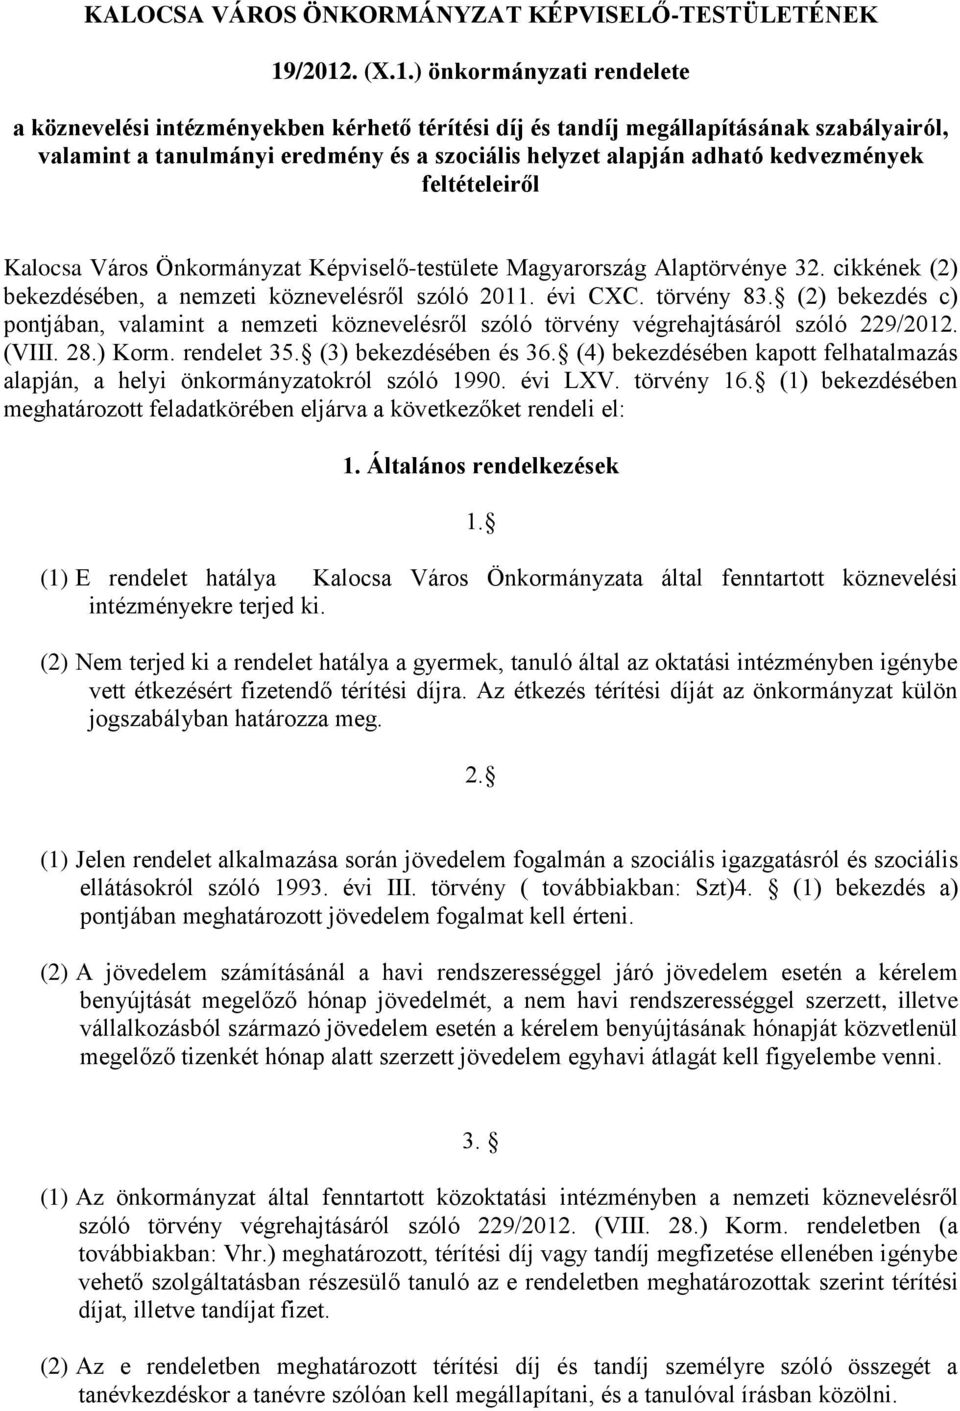 kedvezmények feltételeiről Kalocsa Város Önkormányzat Képviselő-testülete Magyarország Alaptörvénye 32. cikkének (2) bekezdésében, a nemzeti köznevelésről szóló 2011. évi CXC. törvény 83.